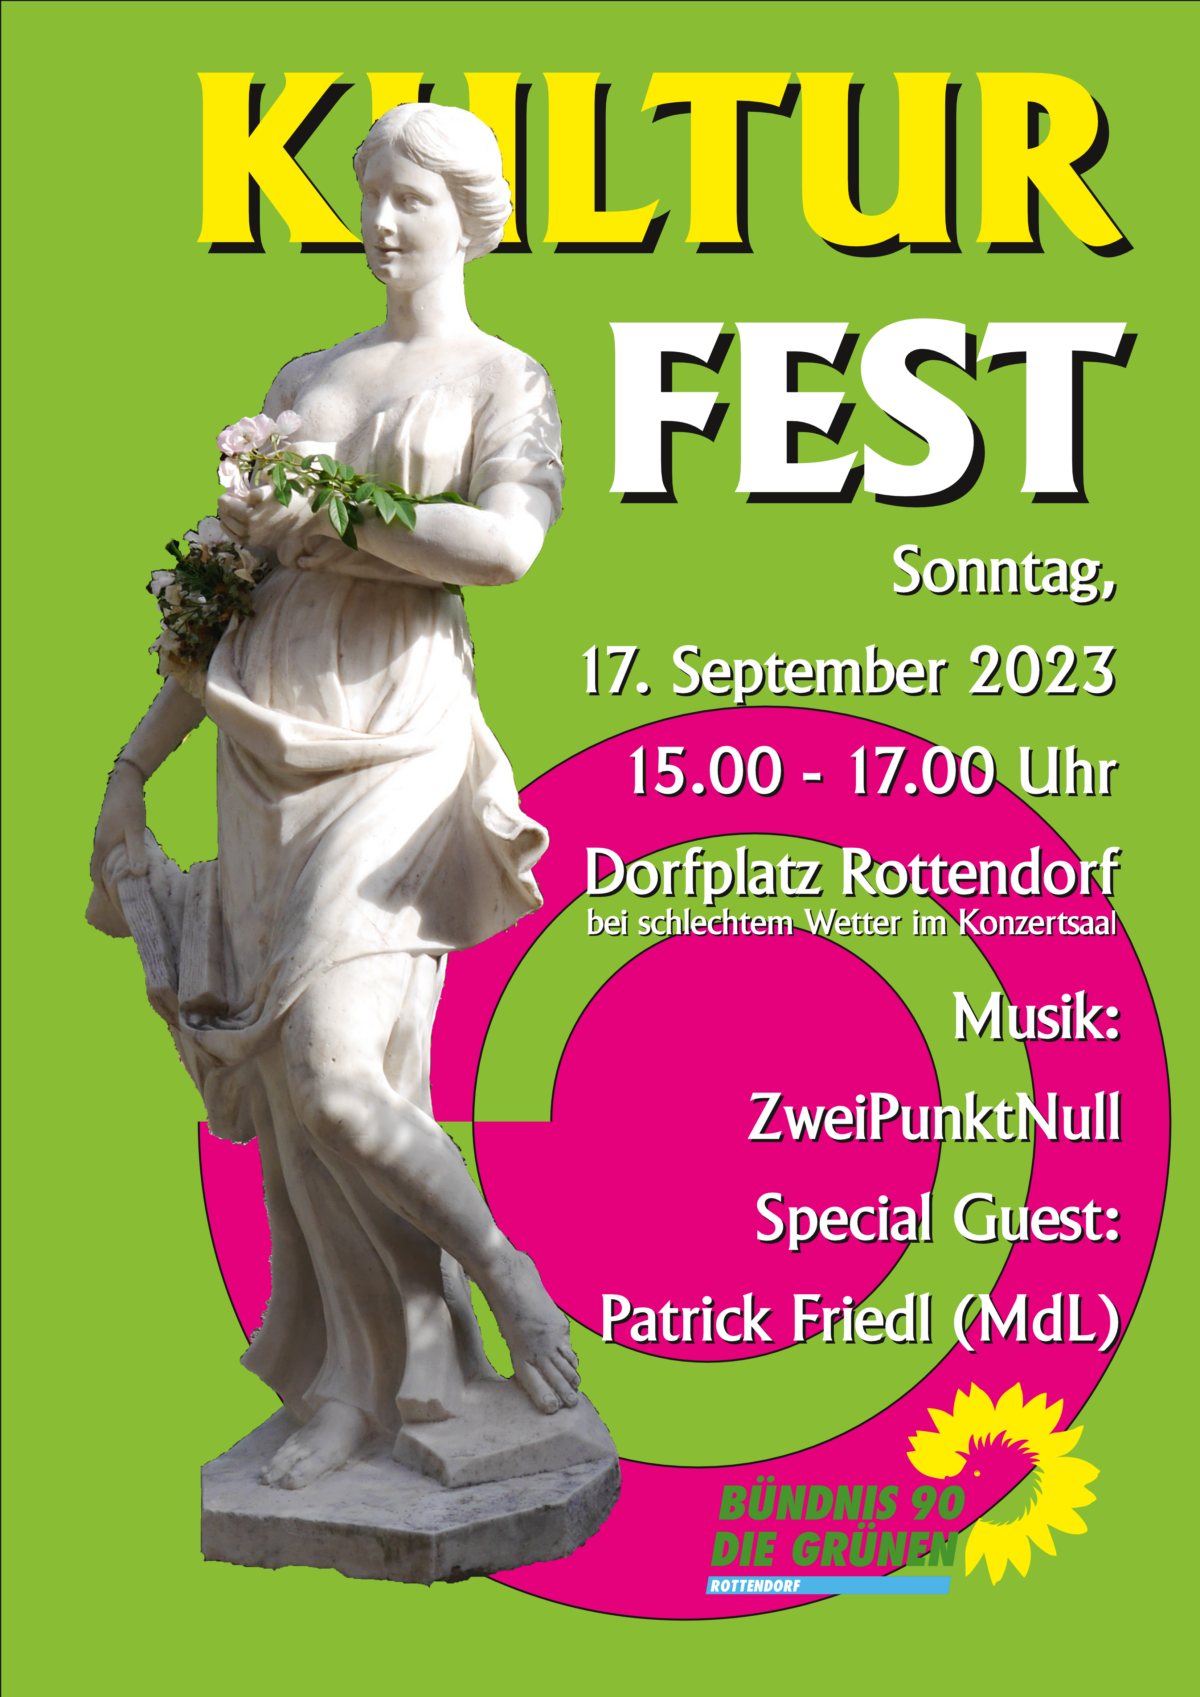 Flyer für das Kulturfest in Rottendorf. Zu Sehen ist links eine Statur aus Mamor, es stellt eine Frau da. Rechts daneben der Text mit Ort und Zeitpunkt, der Ankündigung "Special Guest: Patrick Friedl (MdL)" und "Musik: ZweiPunktNull".